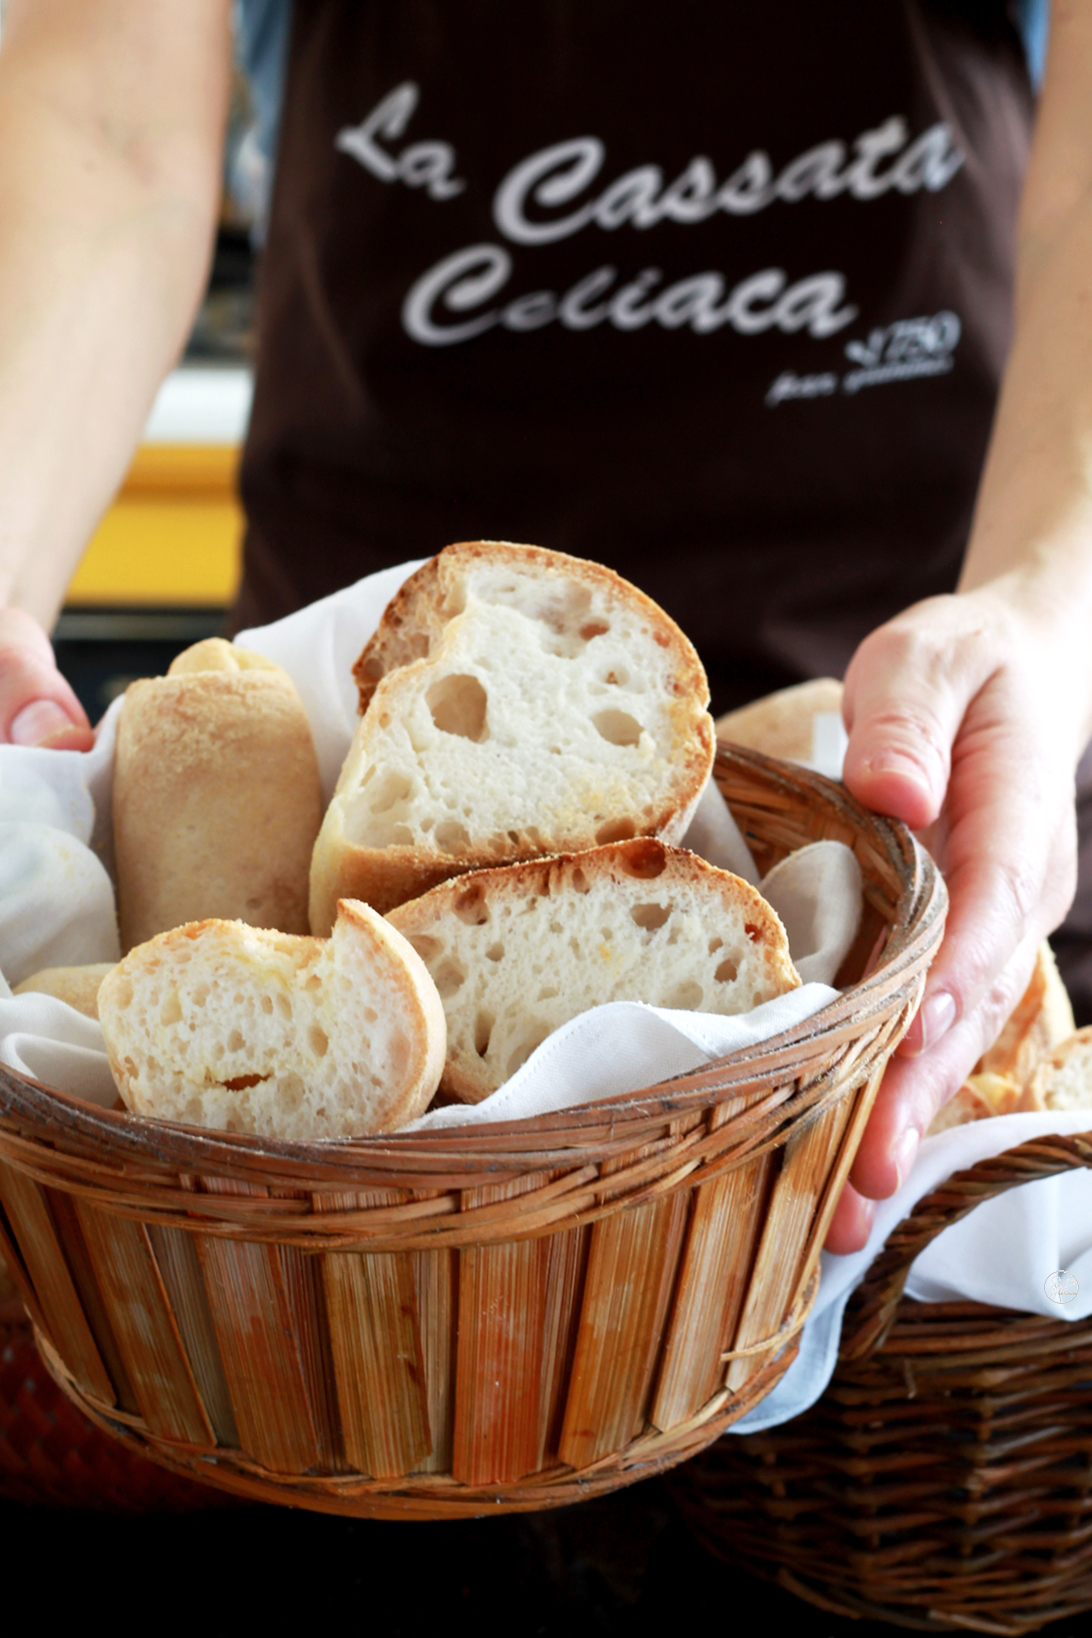 Come fare il pane senza glutine? - La Cassata Celiaca